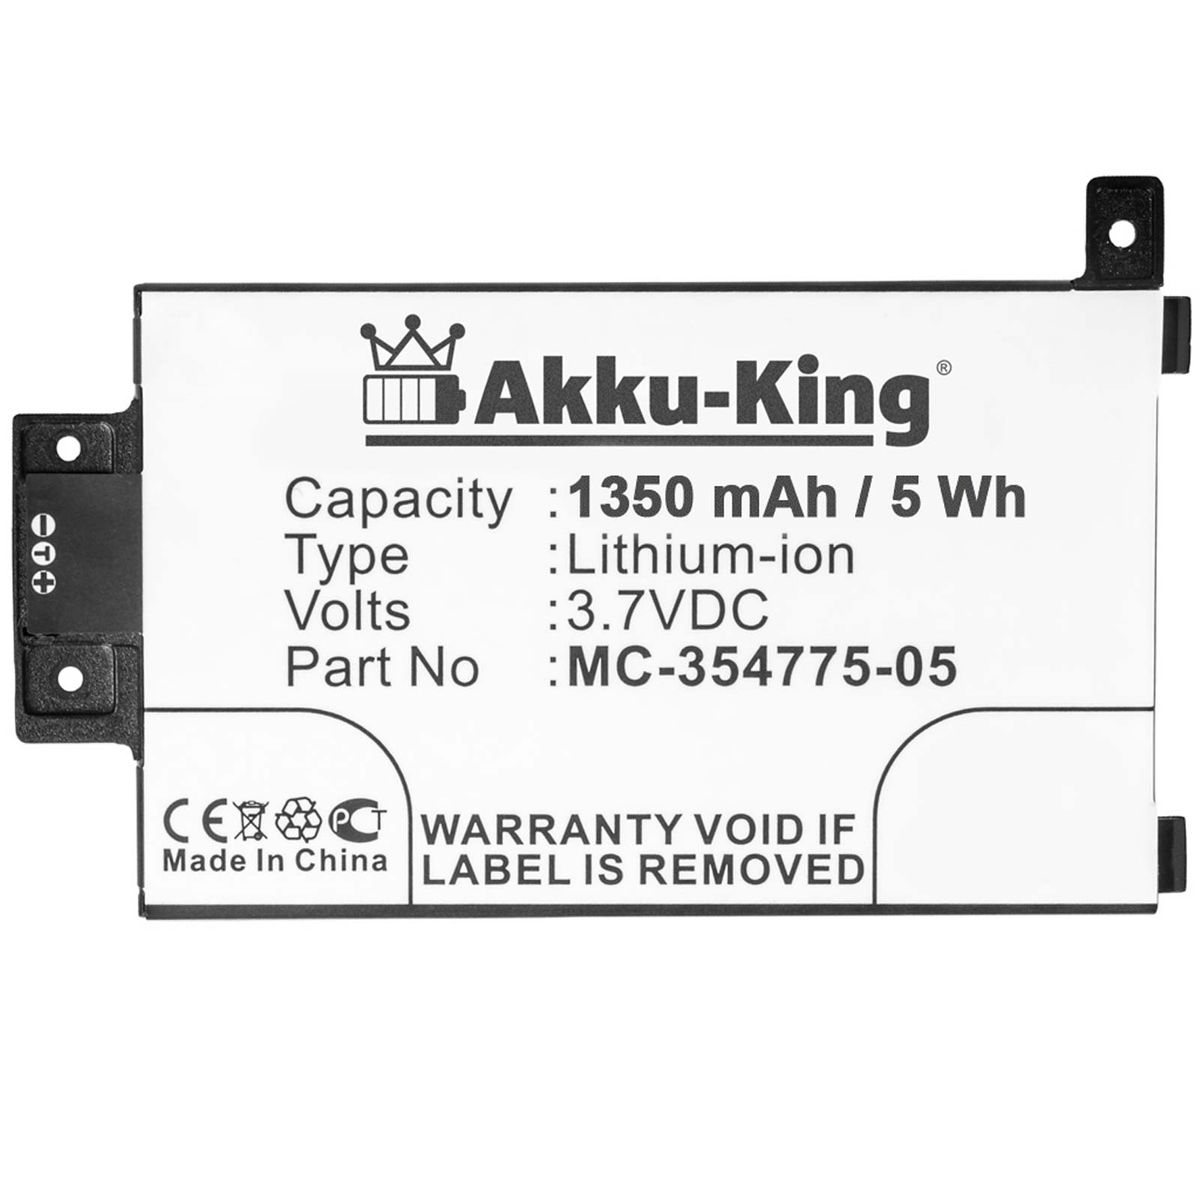 AKKU-KING Akku Volt, MC-354775-05 1350mAh kompatibel mit Amazon Geräte-Akku, Li-Ion 3.7